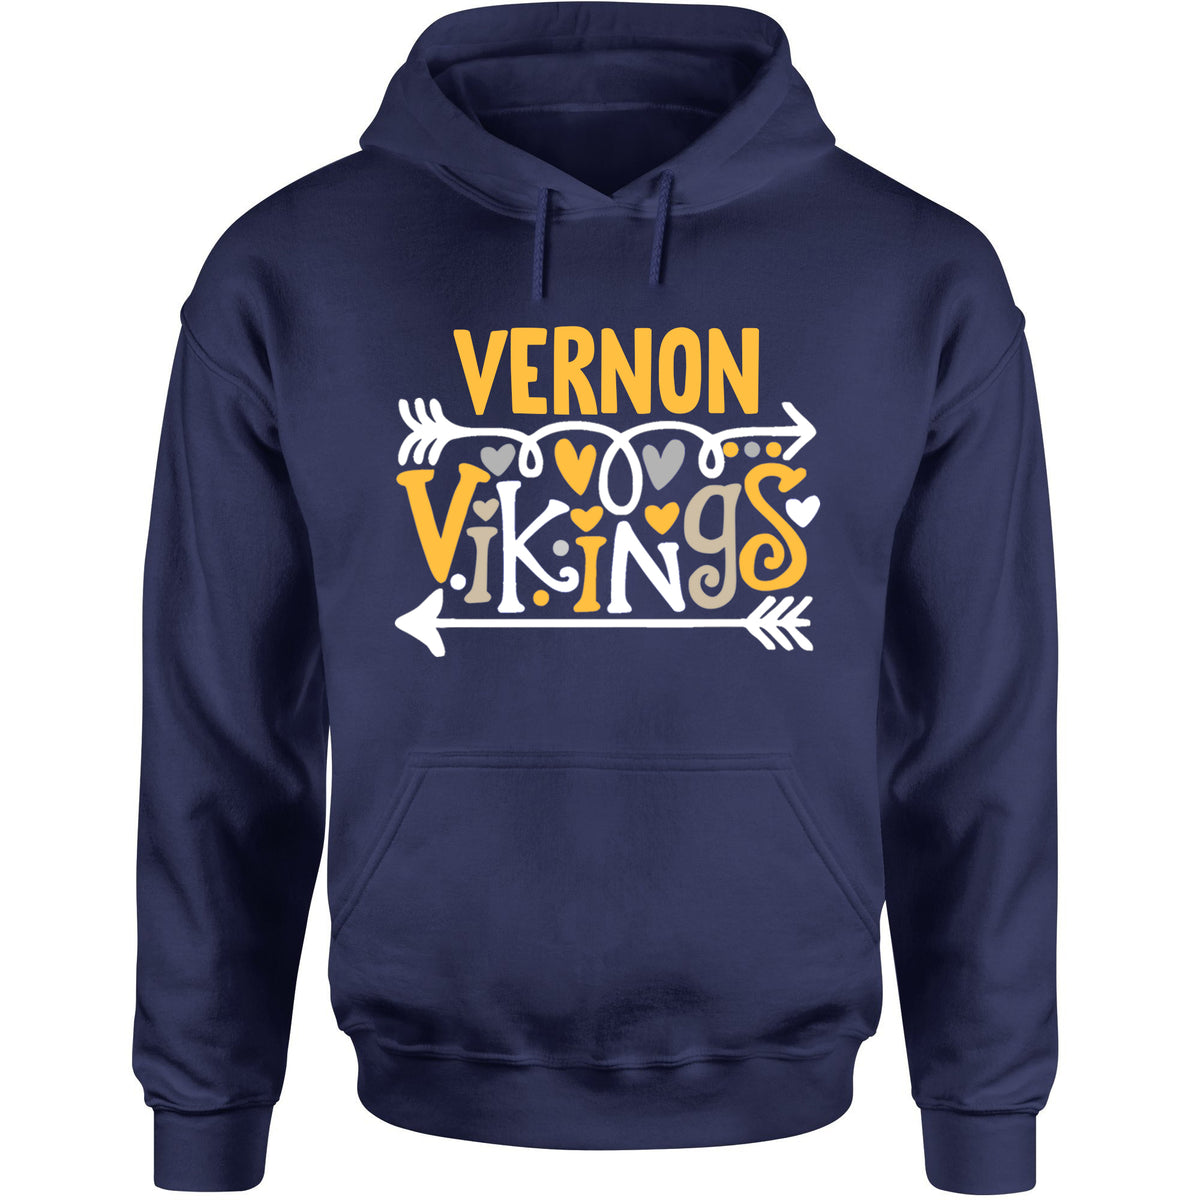 Vernon Vikings Arrows Hooded Sweatshirt